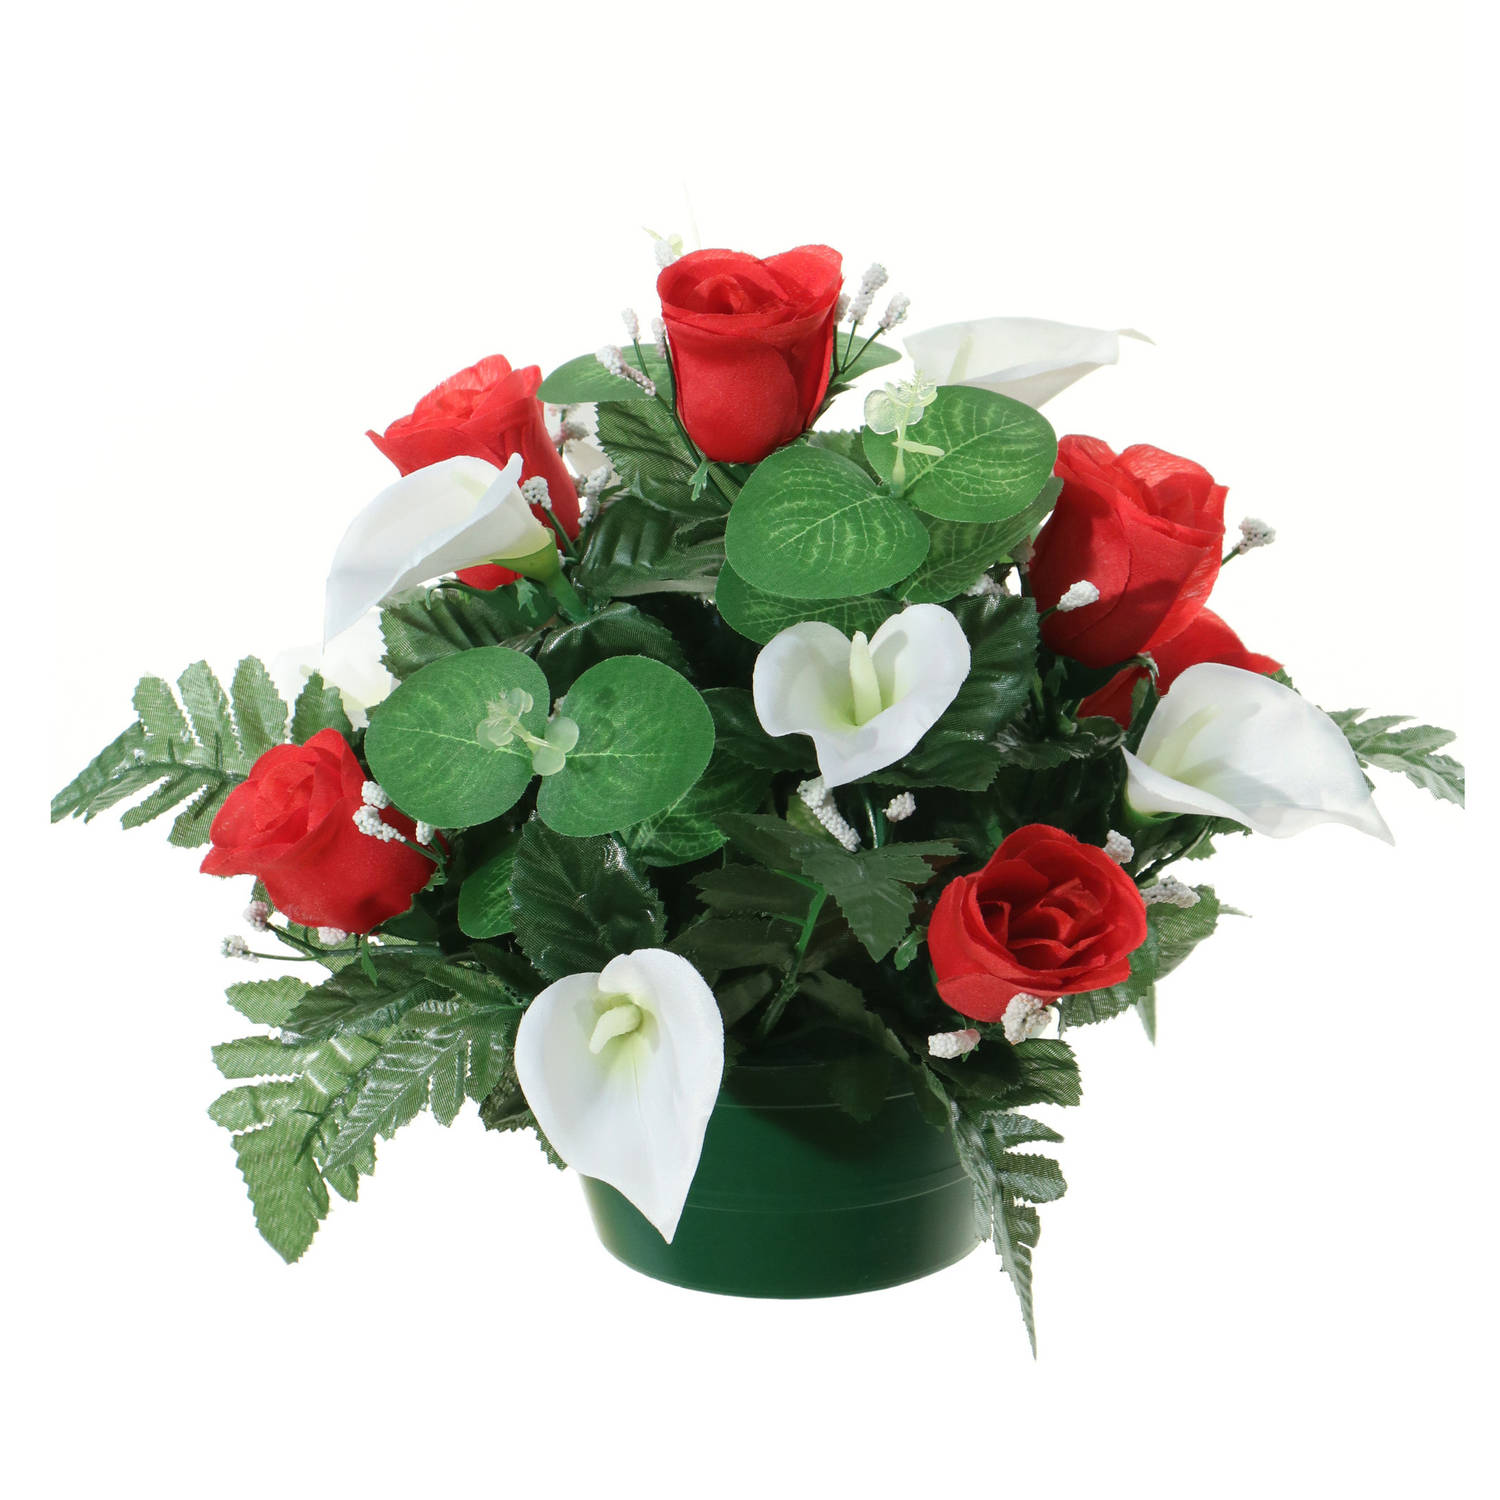 Louis Maes Kunstbloemen plantje in pot - wit/rood - 26 cm - Bloemstuk ornament - rozen met bladgroen